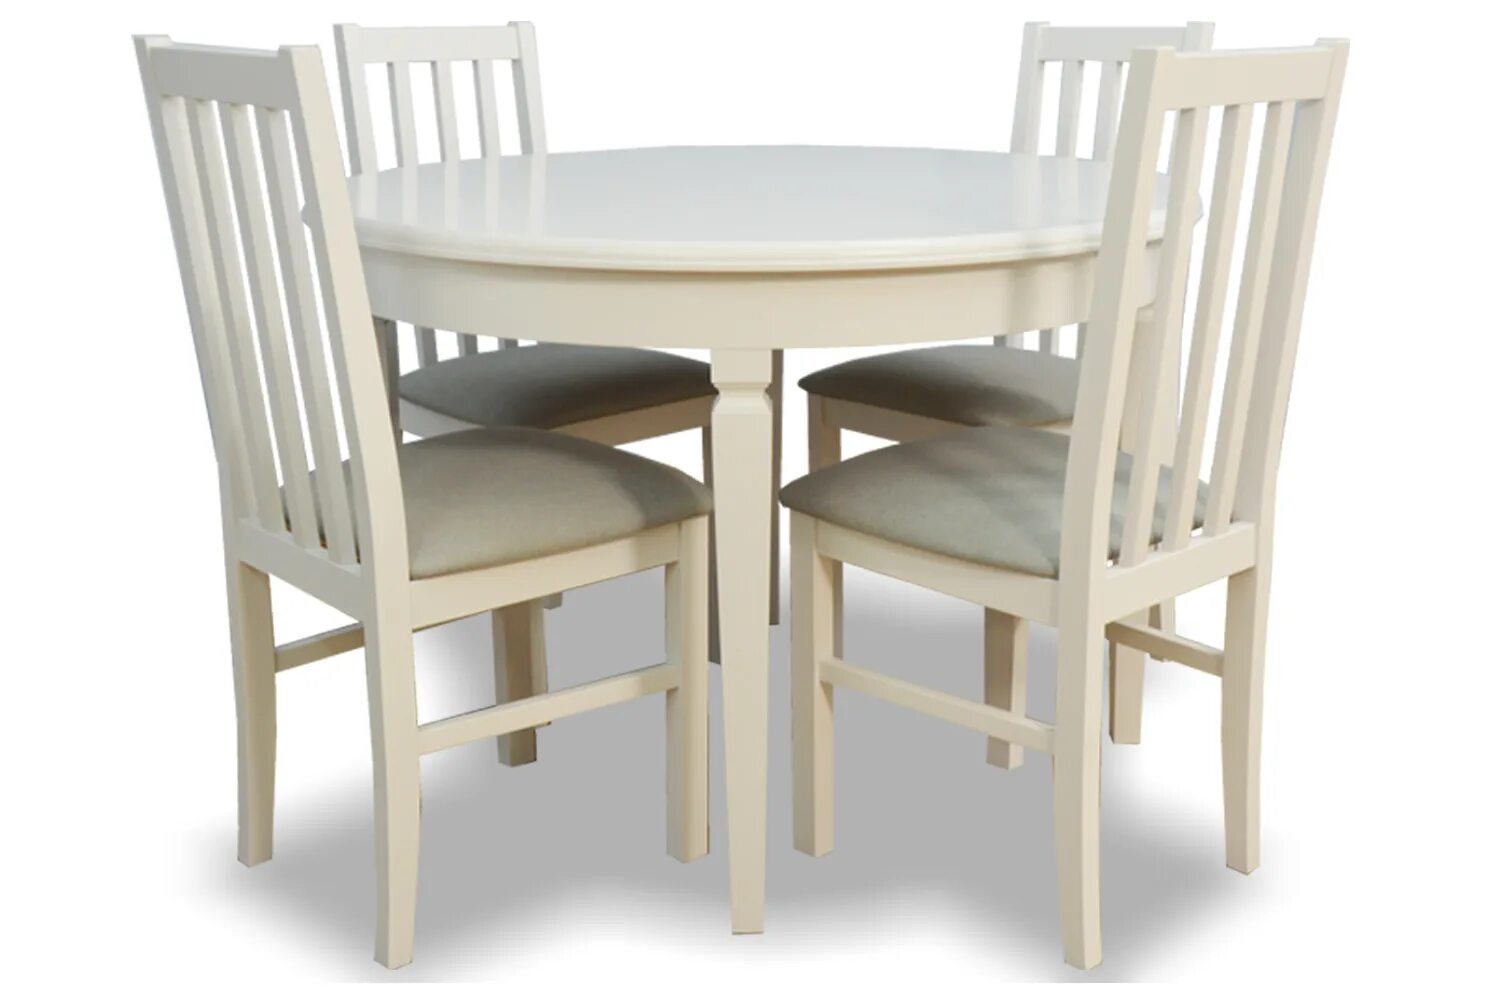 Стол кухонный набор. Обеденный набор Halmar Faust (стол + 4 стула). Хофф наборы стол и стулья. Обеденный комплект для кухни стол и стулья. Кухонный набор стол и стулья.